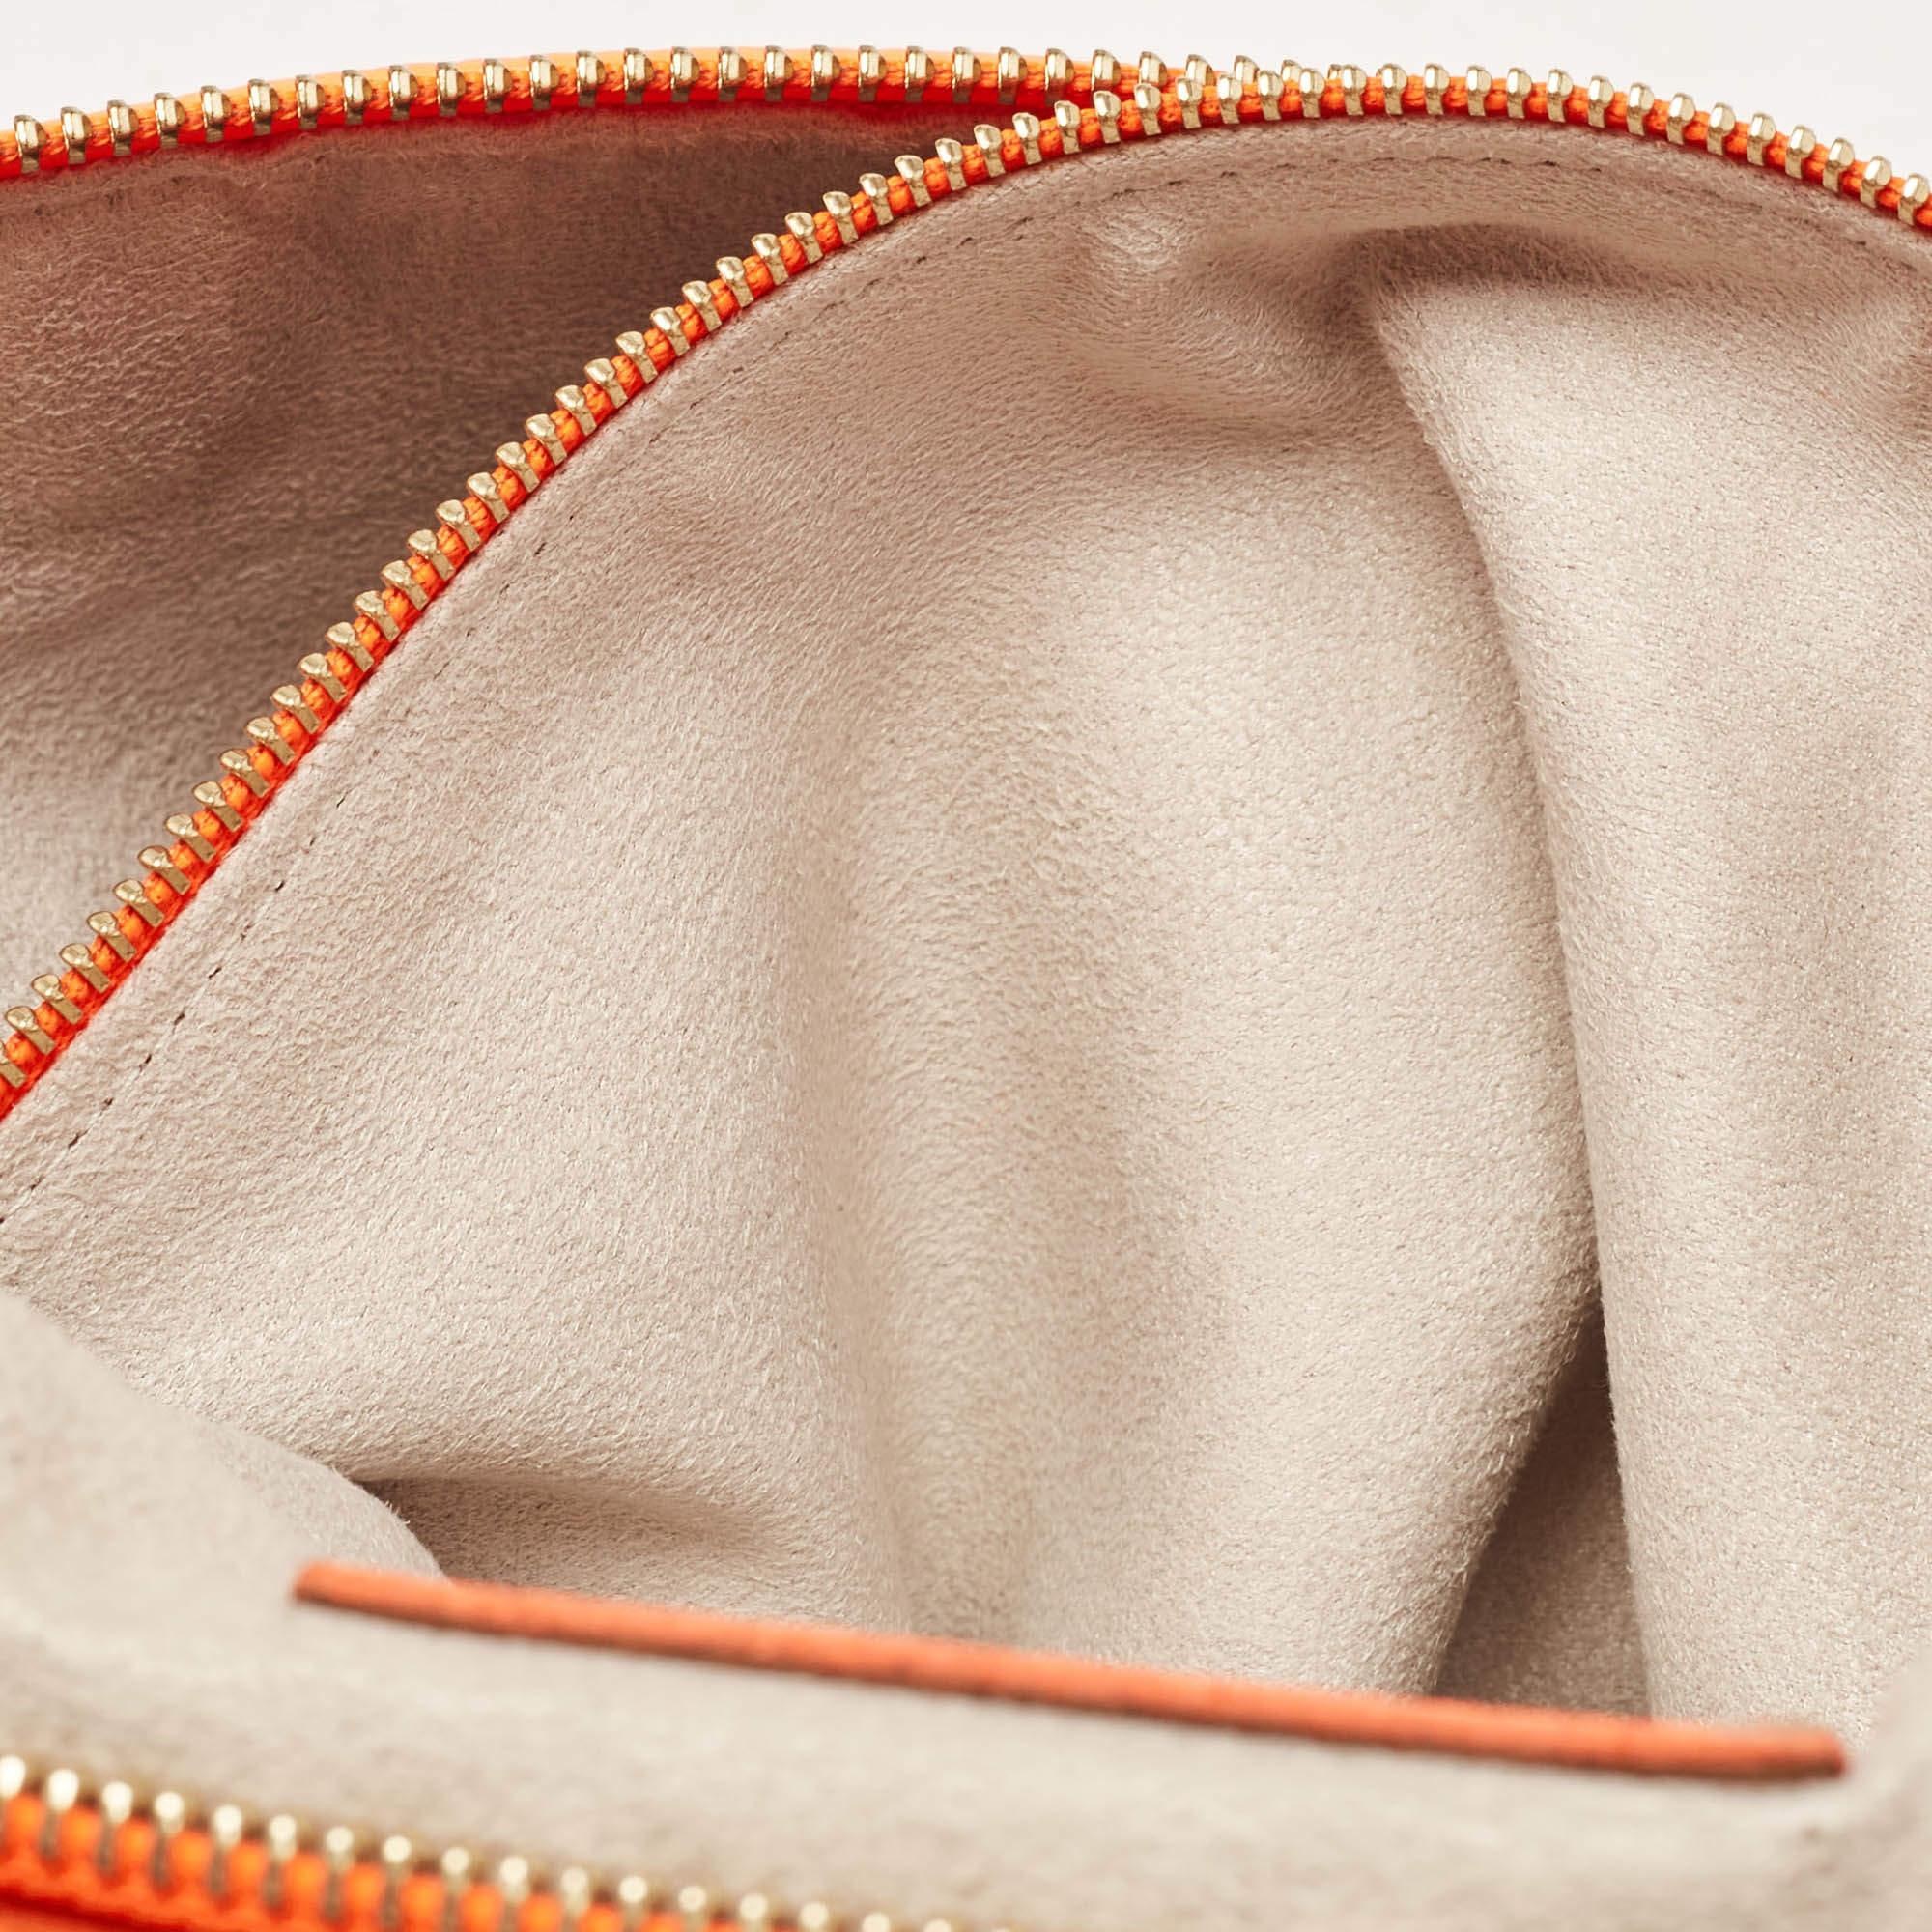 Jimmy Choo Neon Orange Leather Flap Shoulder Bag For Sale 9